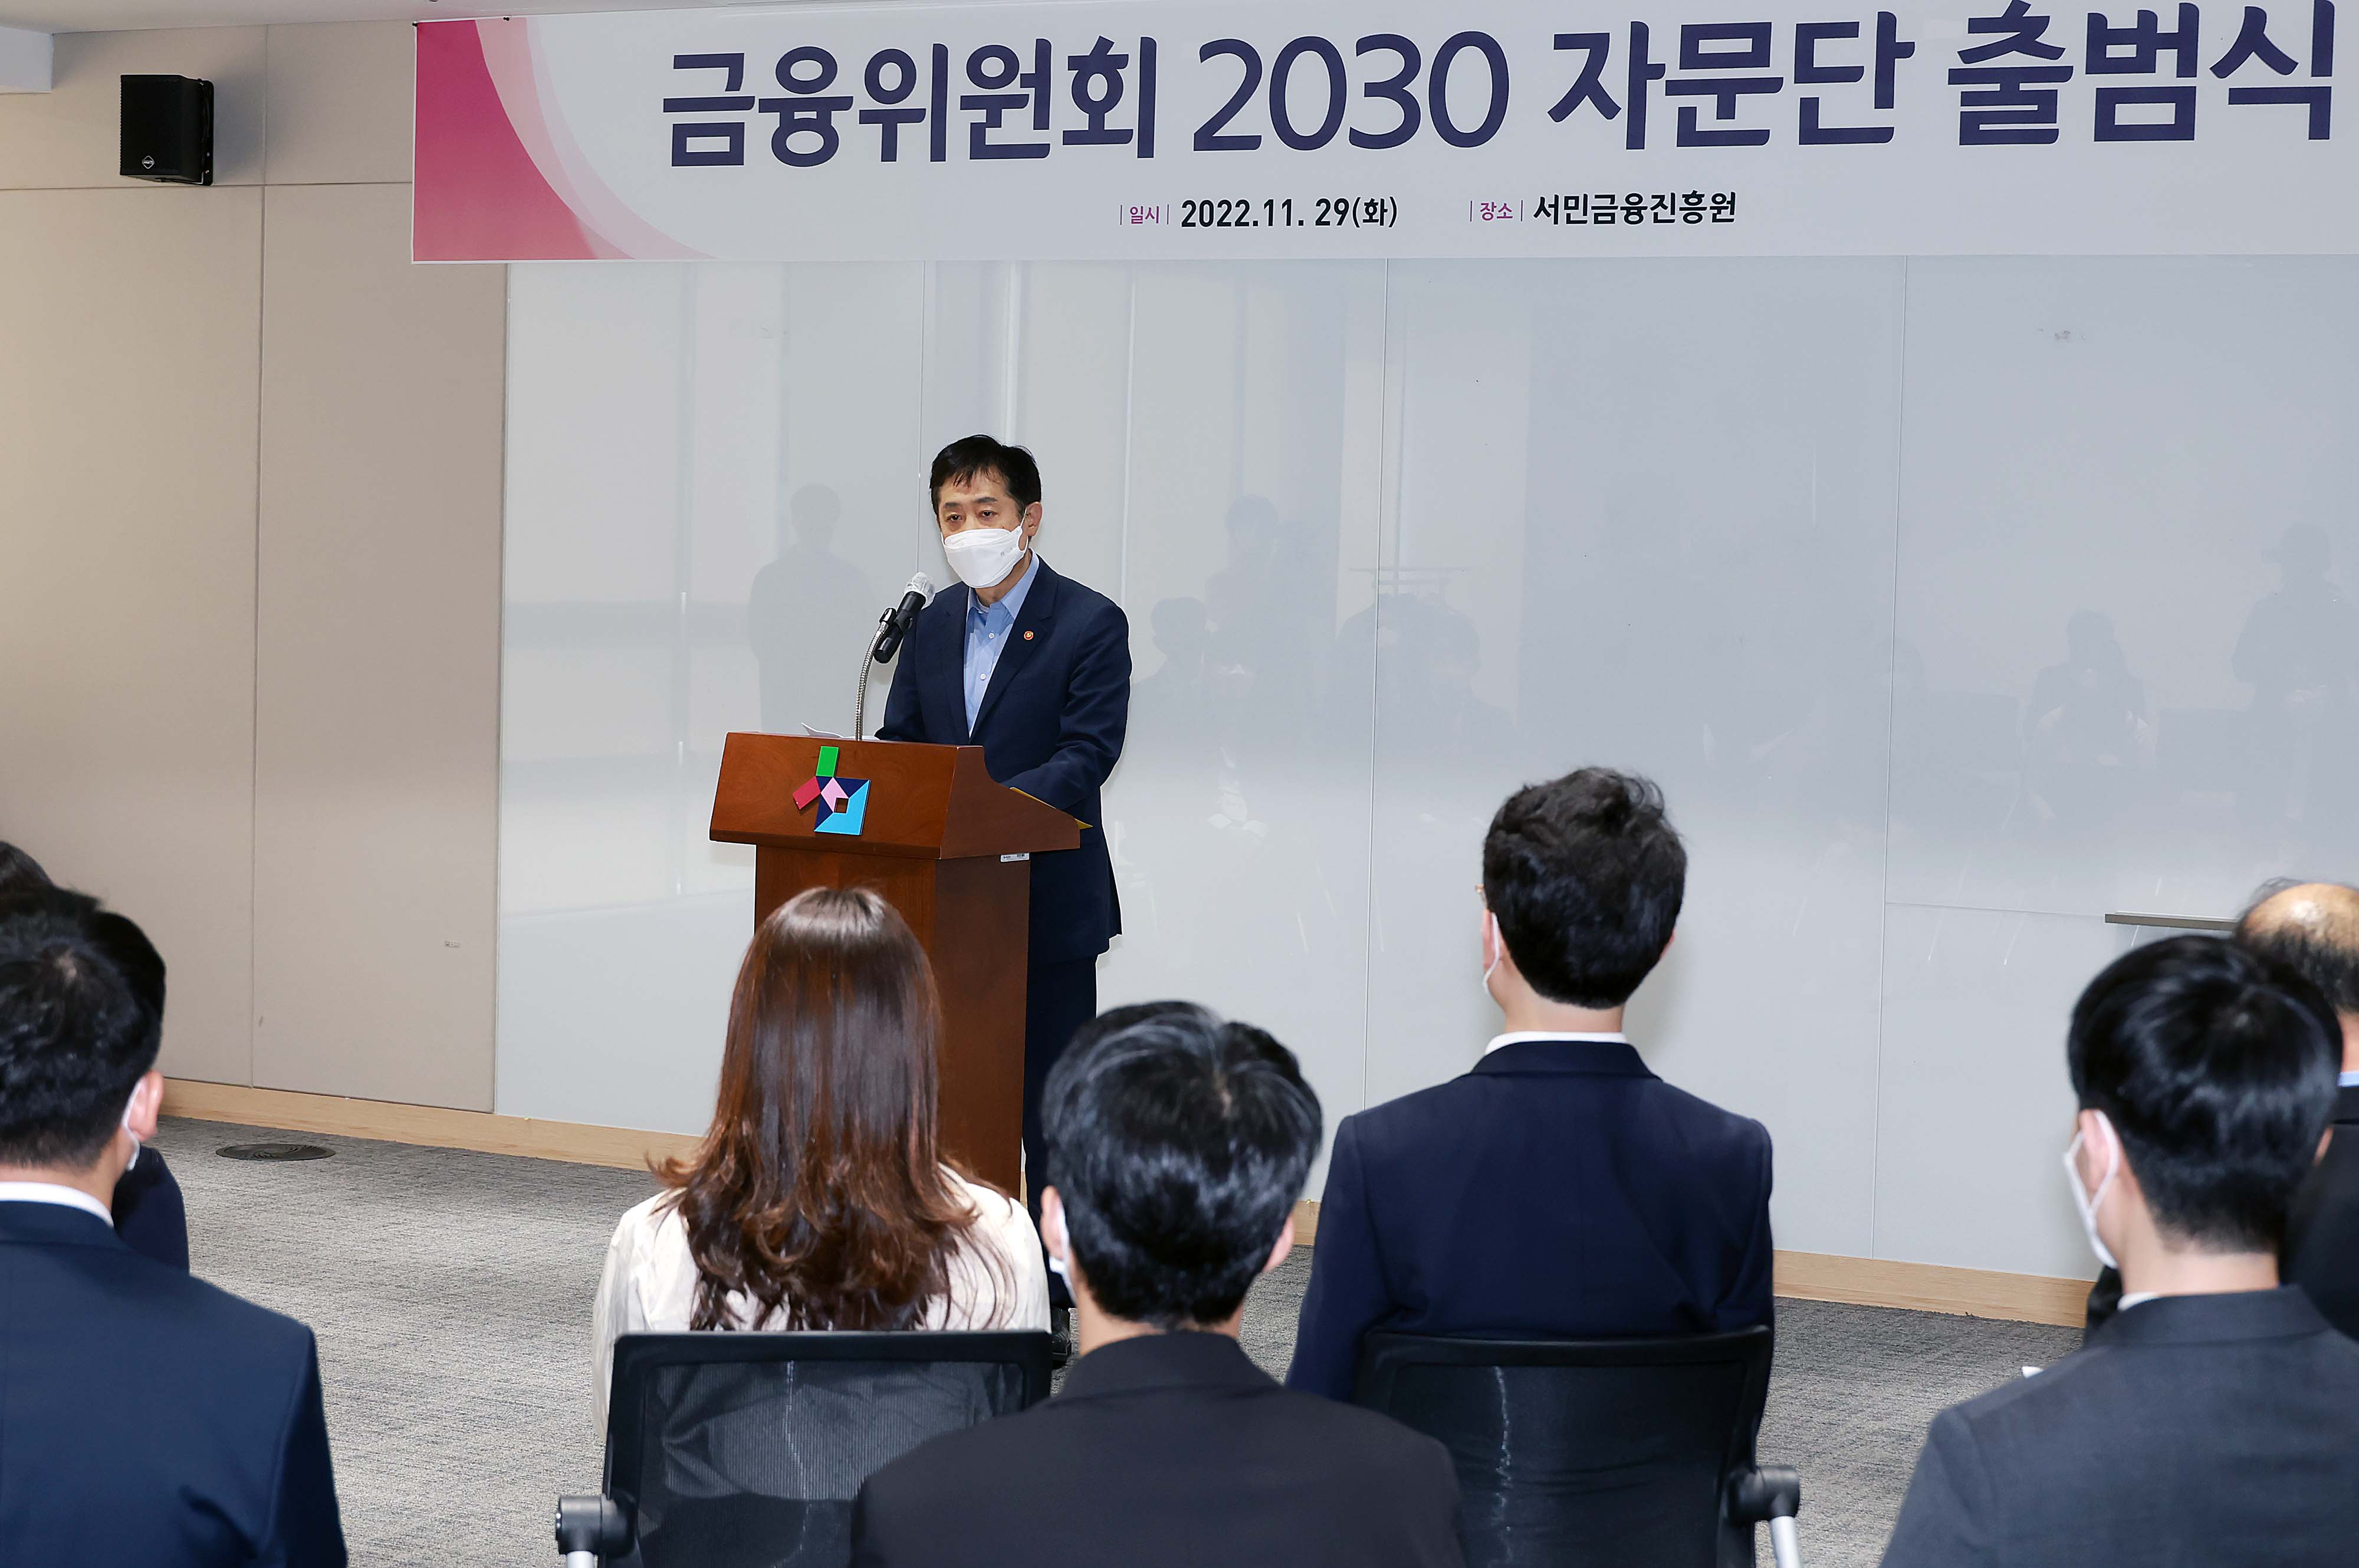 금융위원회 2030 자문단 출범식 개최2